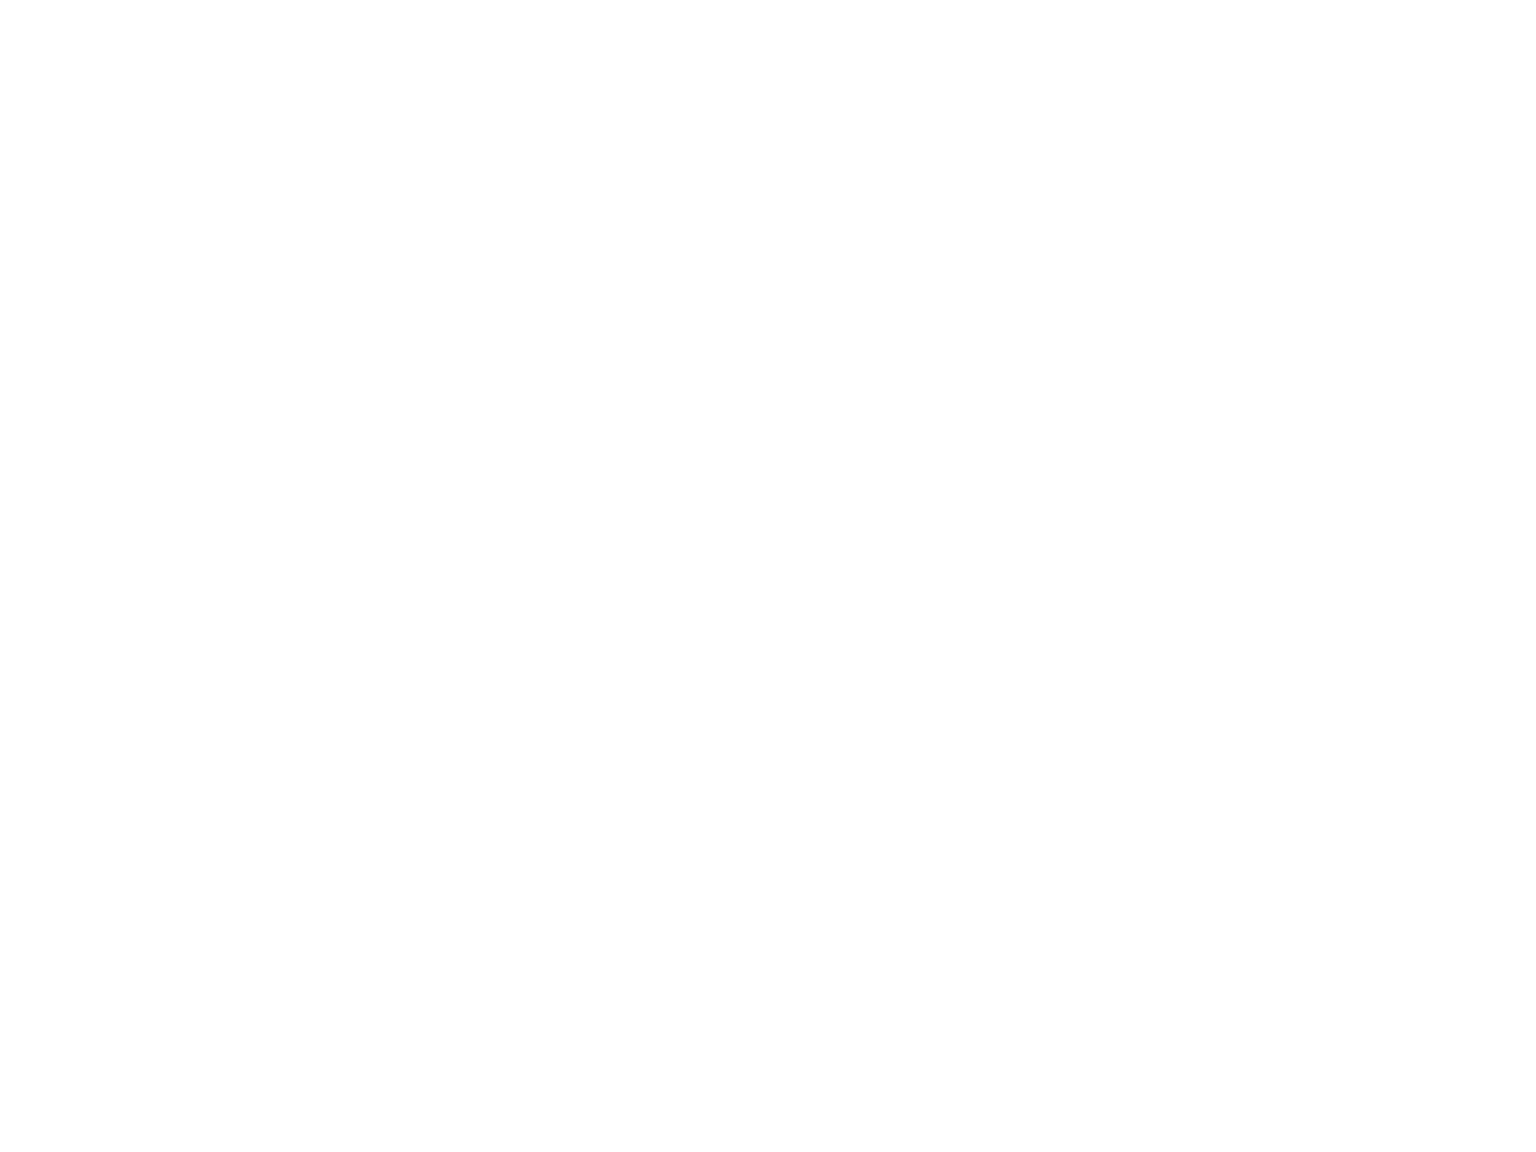 дизайн логотипа христианской евангельской церкви "Благословение"